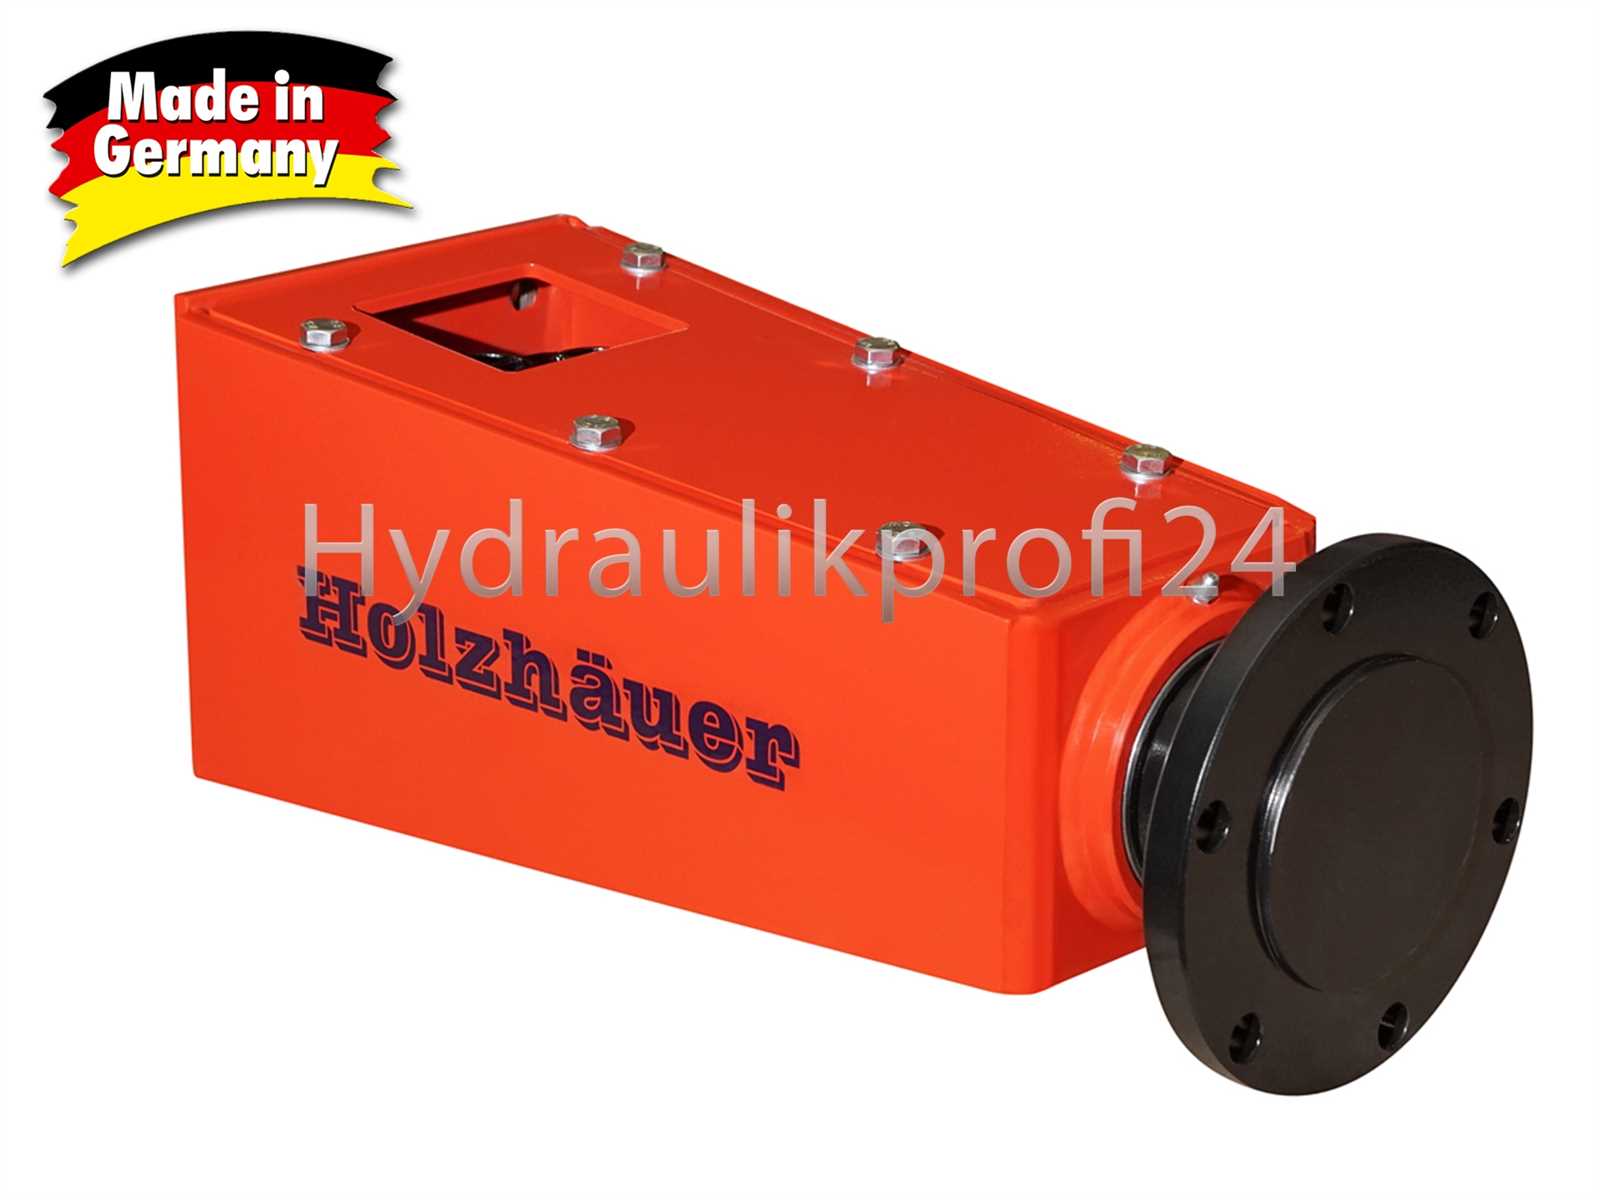 Hydraulikprofi24 - Hydraulikprofi24